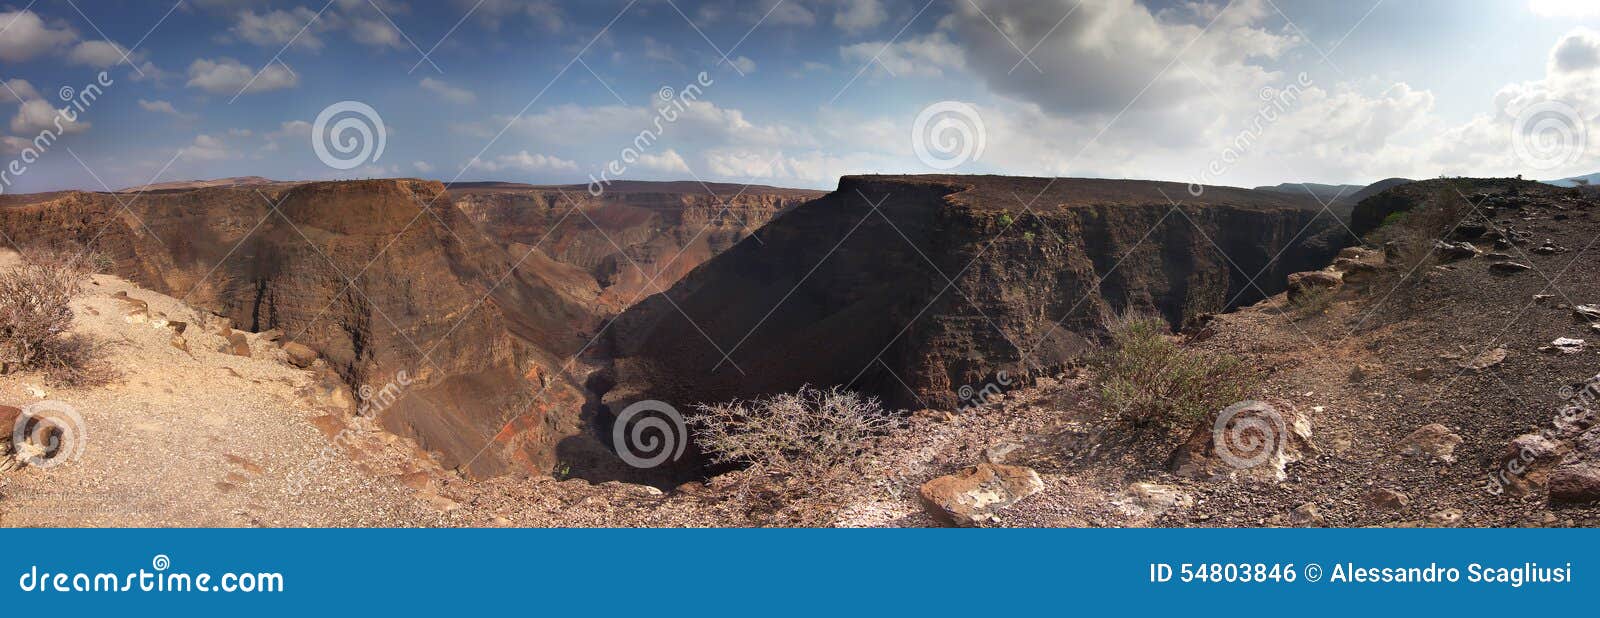 panorama: canyon arta in djibouti - gibuti